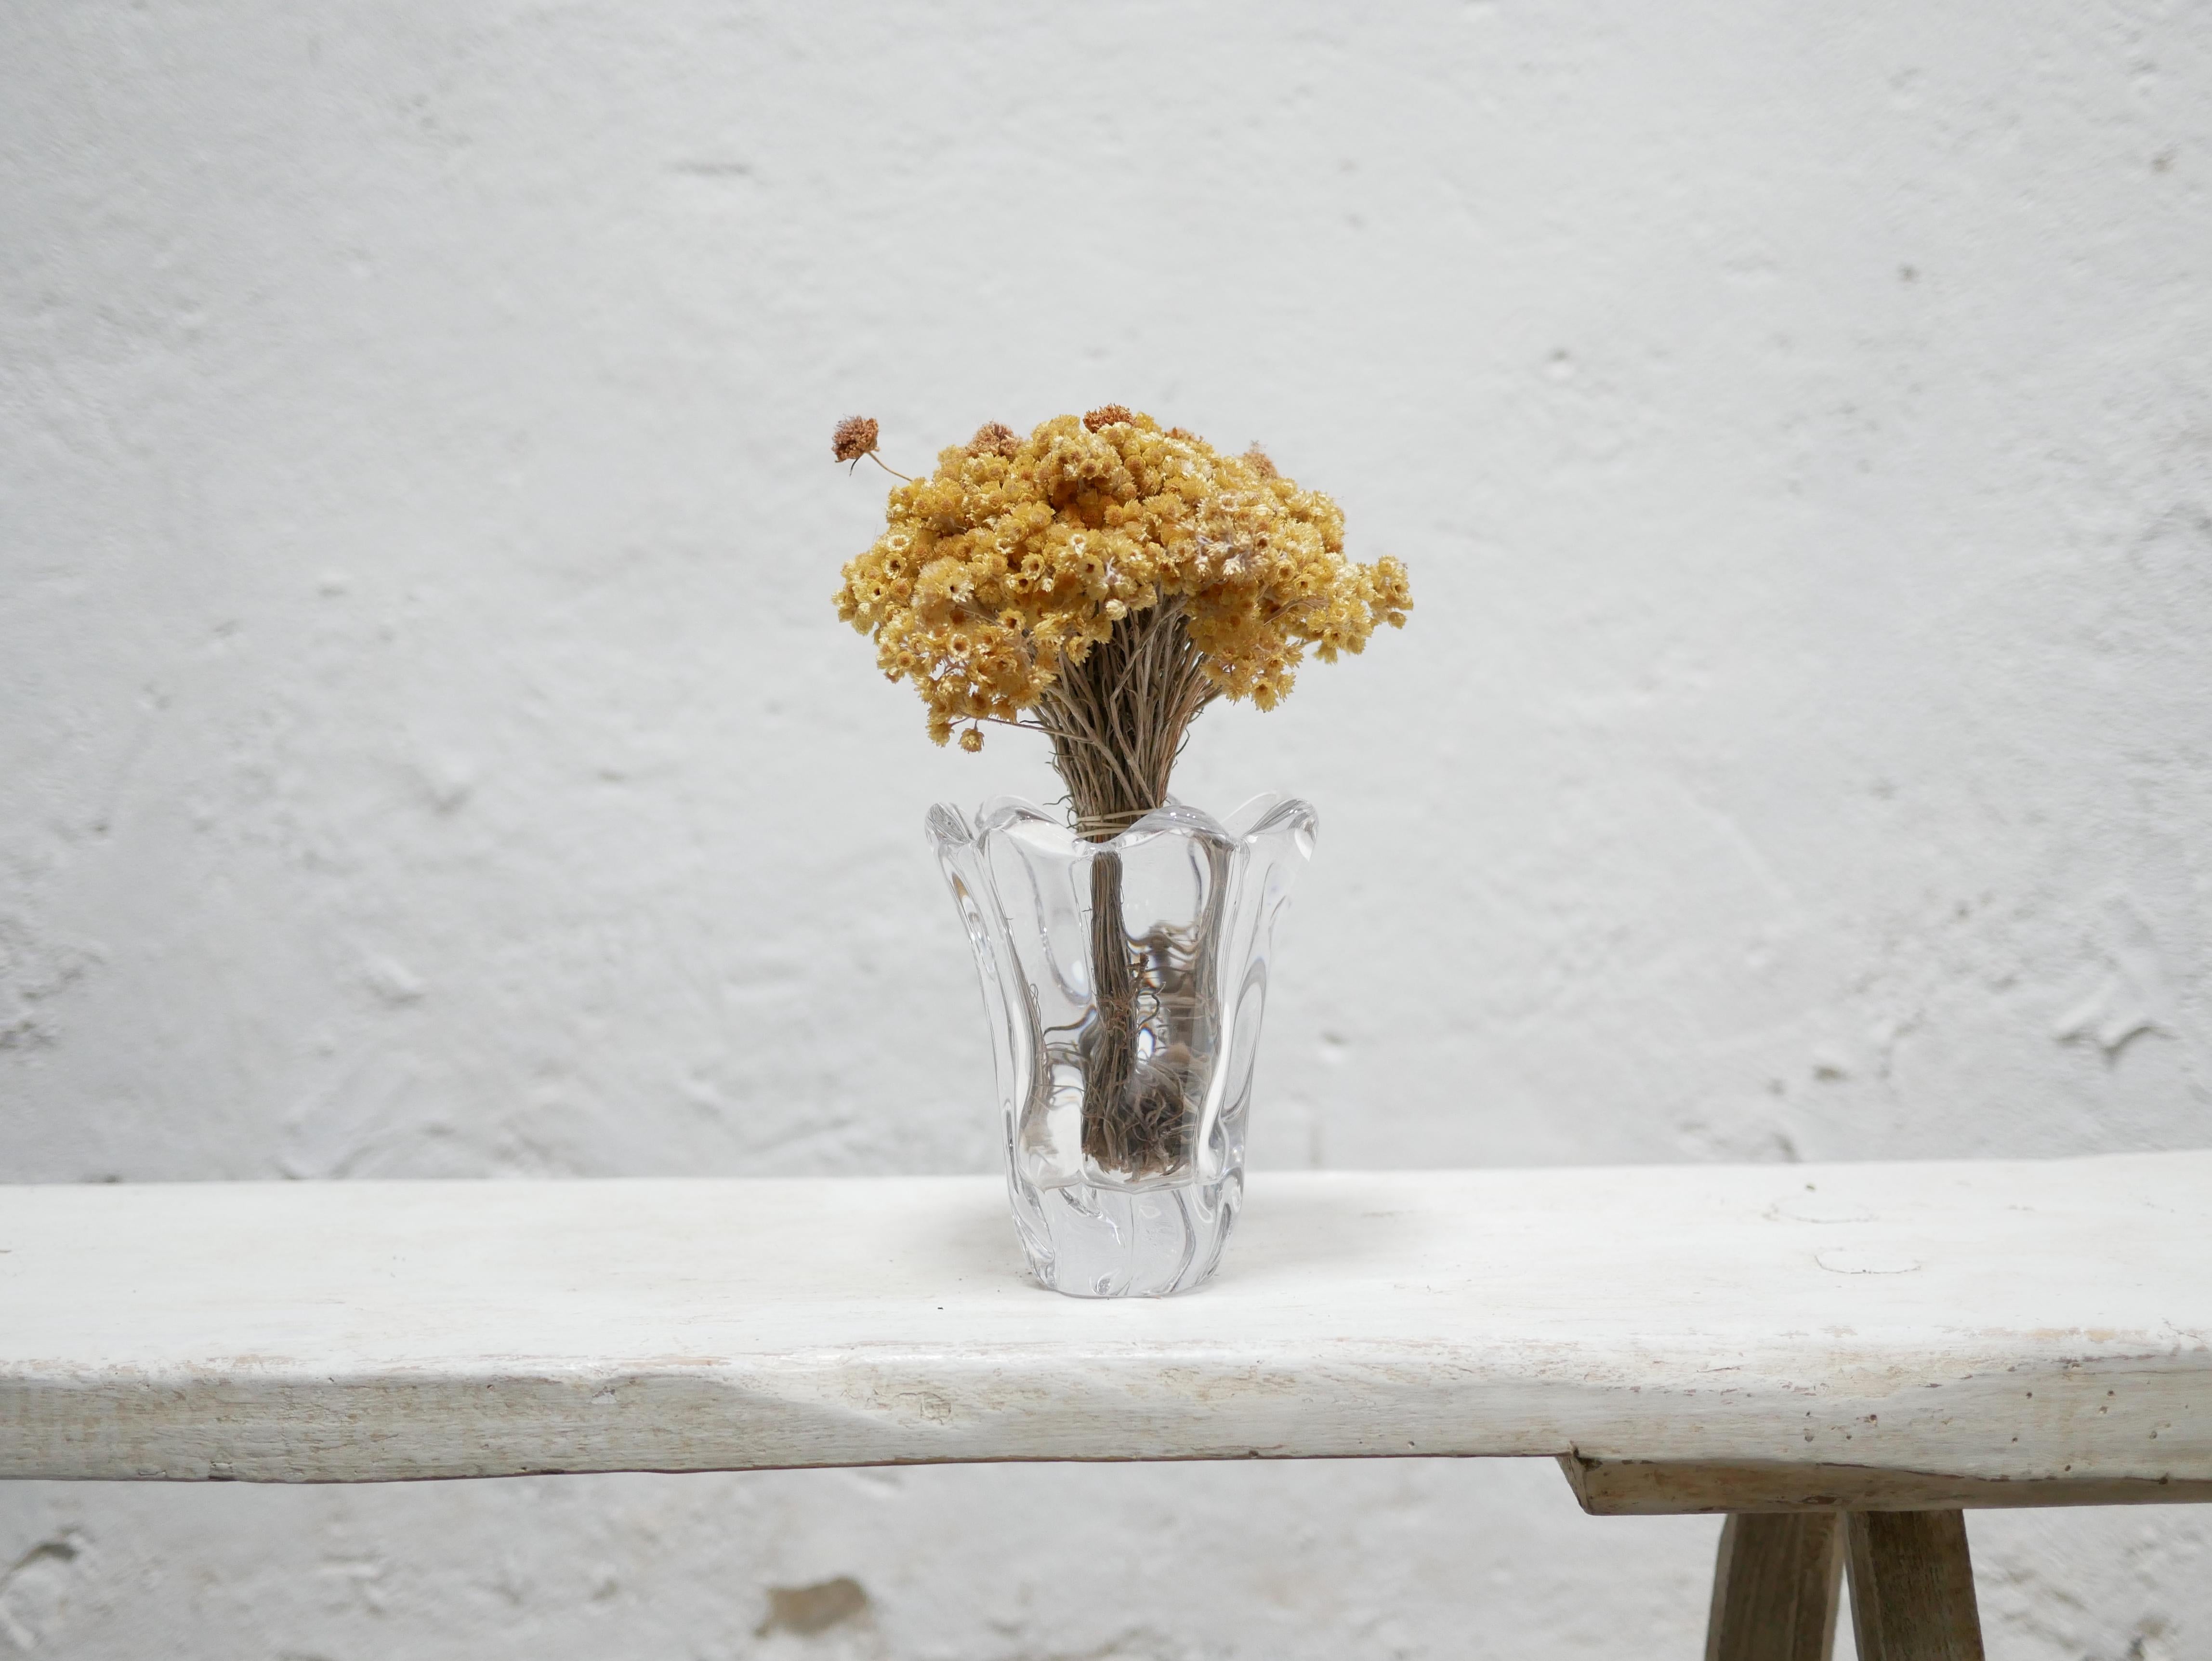 Vase en cristal signé Daum France datant des années 60.

De belle facture, esthétique et de bonne taille, ce vase ne manque pas de caractère et d'élégance. Il sera parfait pour une décoration tendance et actuelle.

Très bon état, légères marques